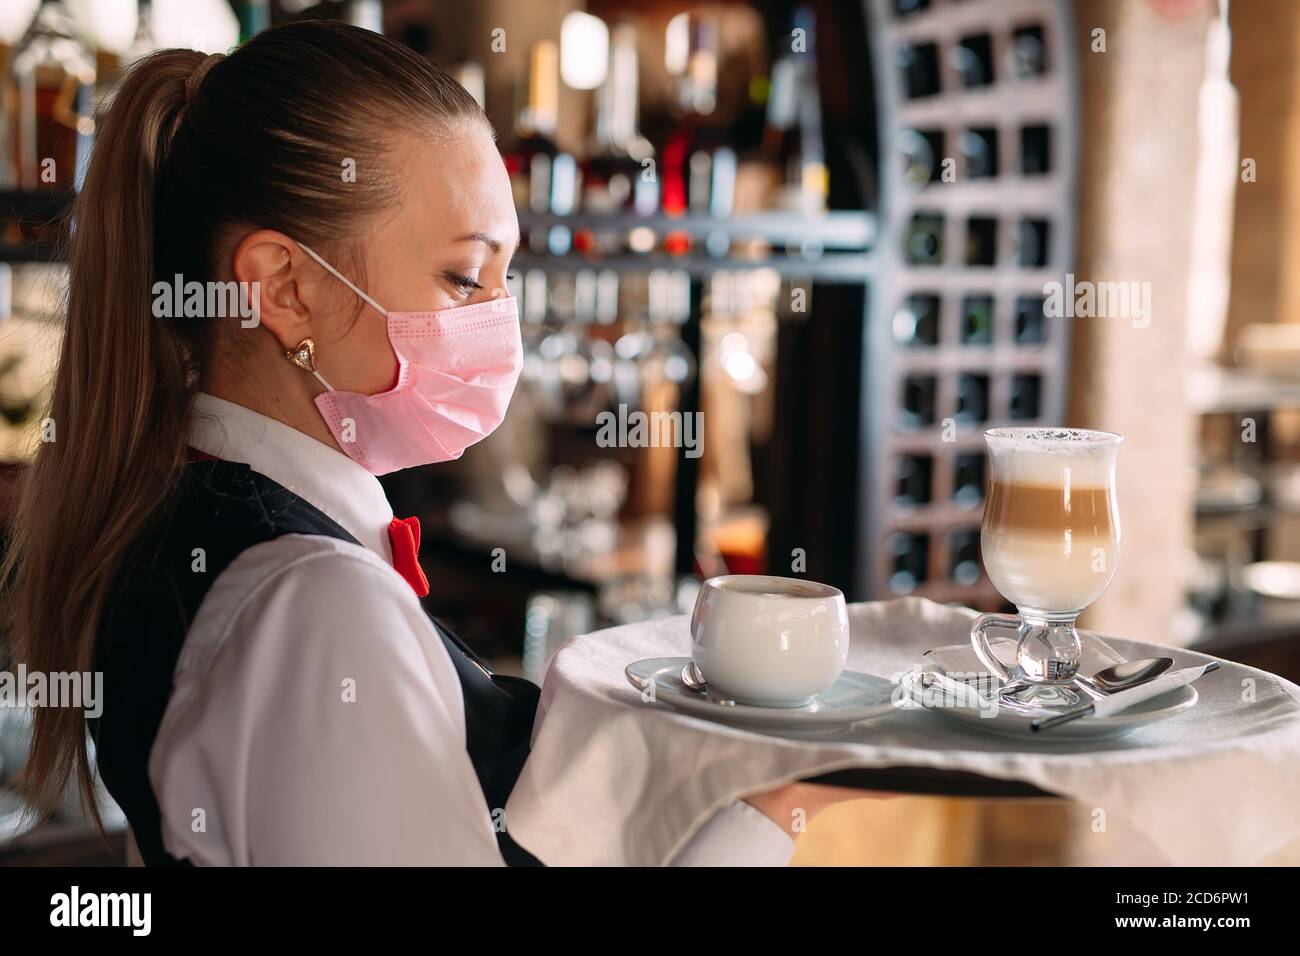 Una cameriera femminile di aspetto europeo in una maschera medica serve caffè latte. Foto Stock